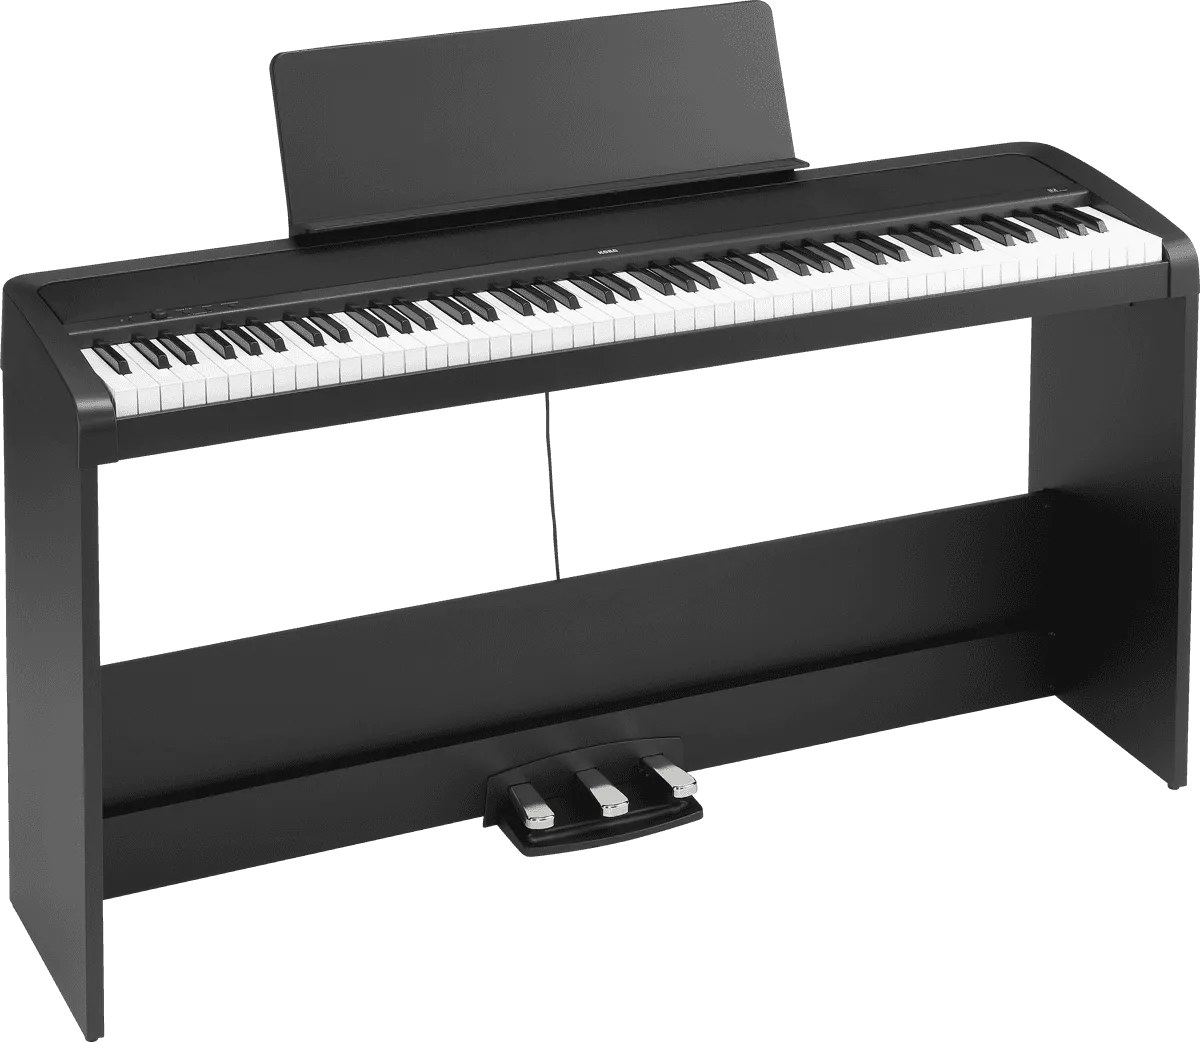 Comment utiliser les pédales d'un piano numérique?